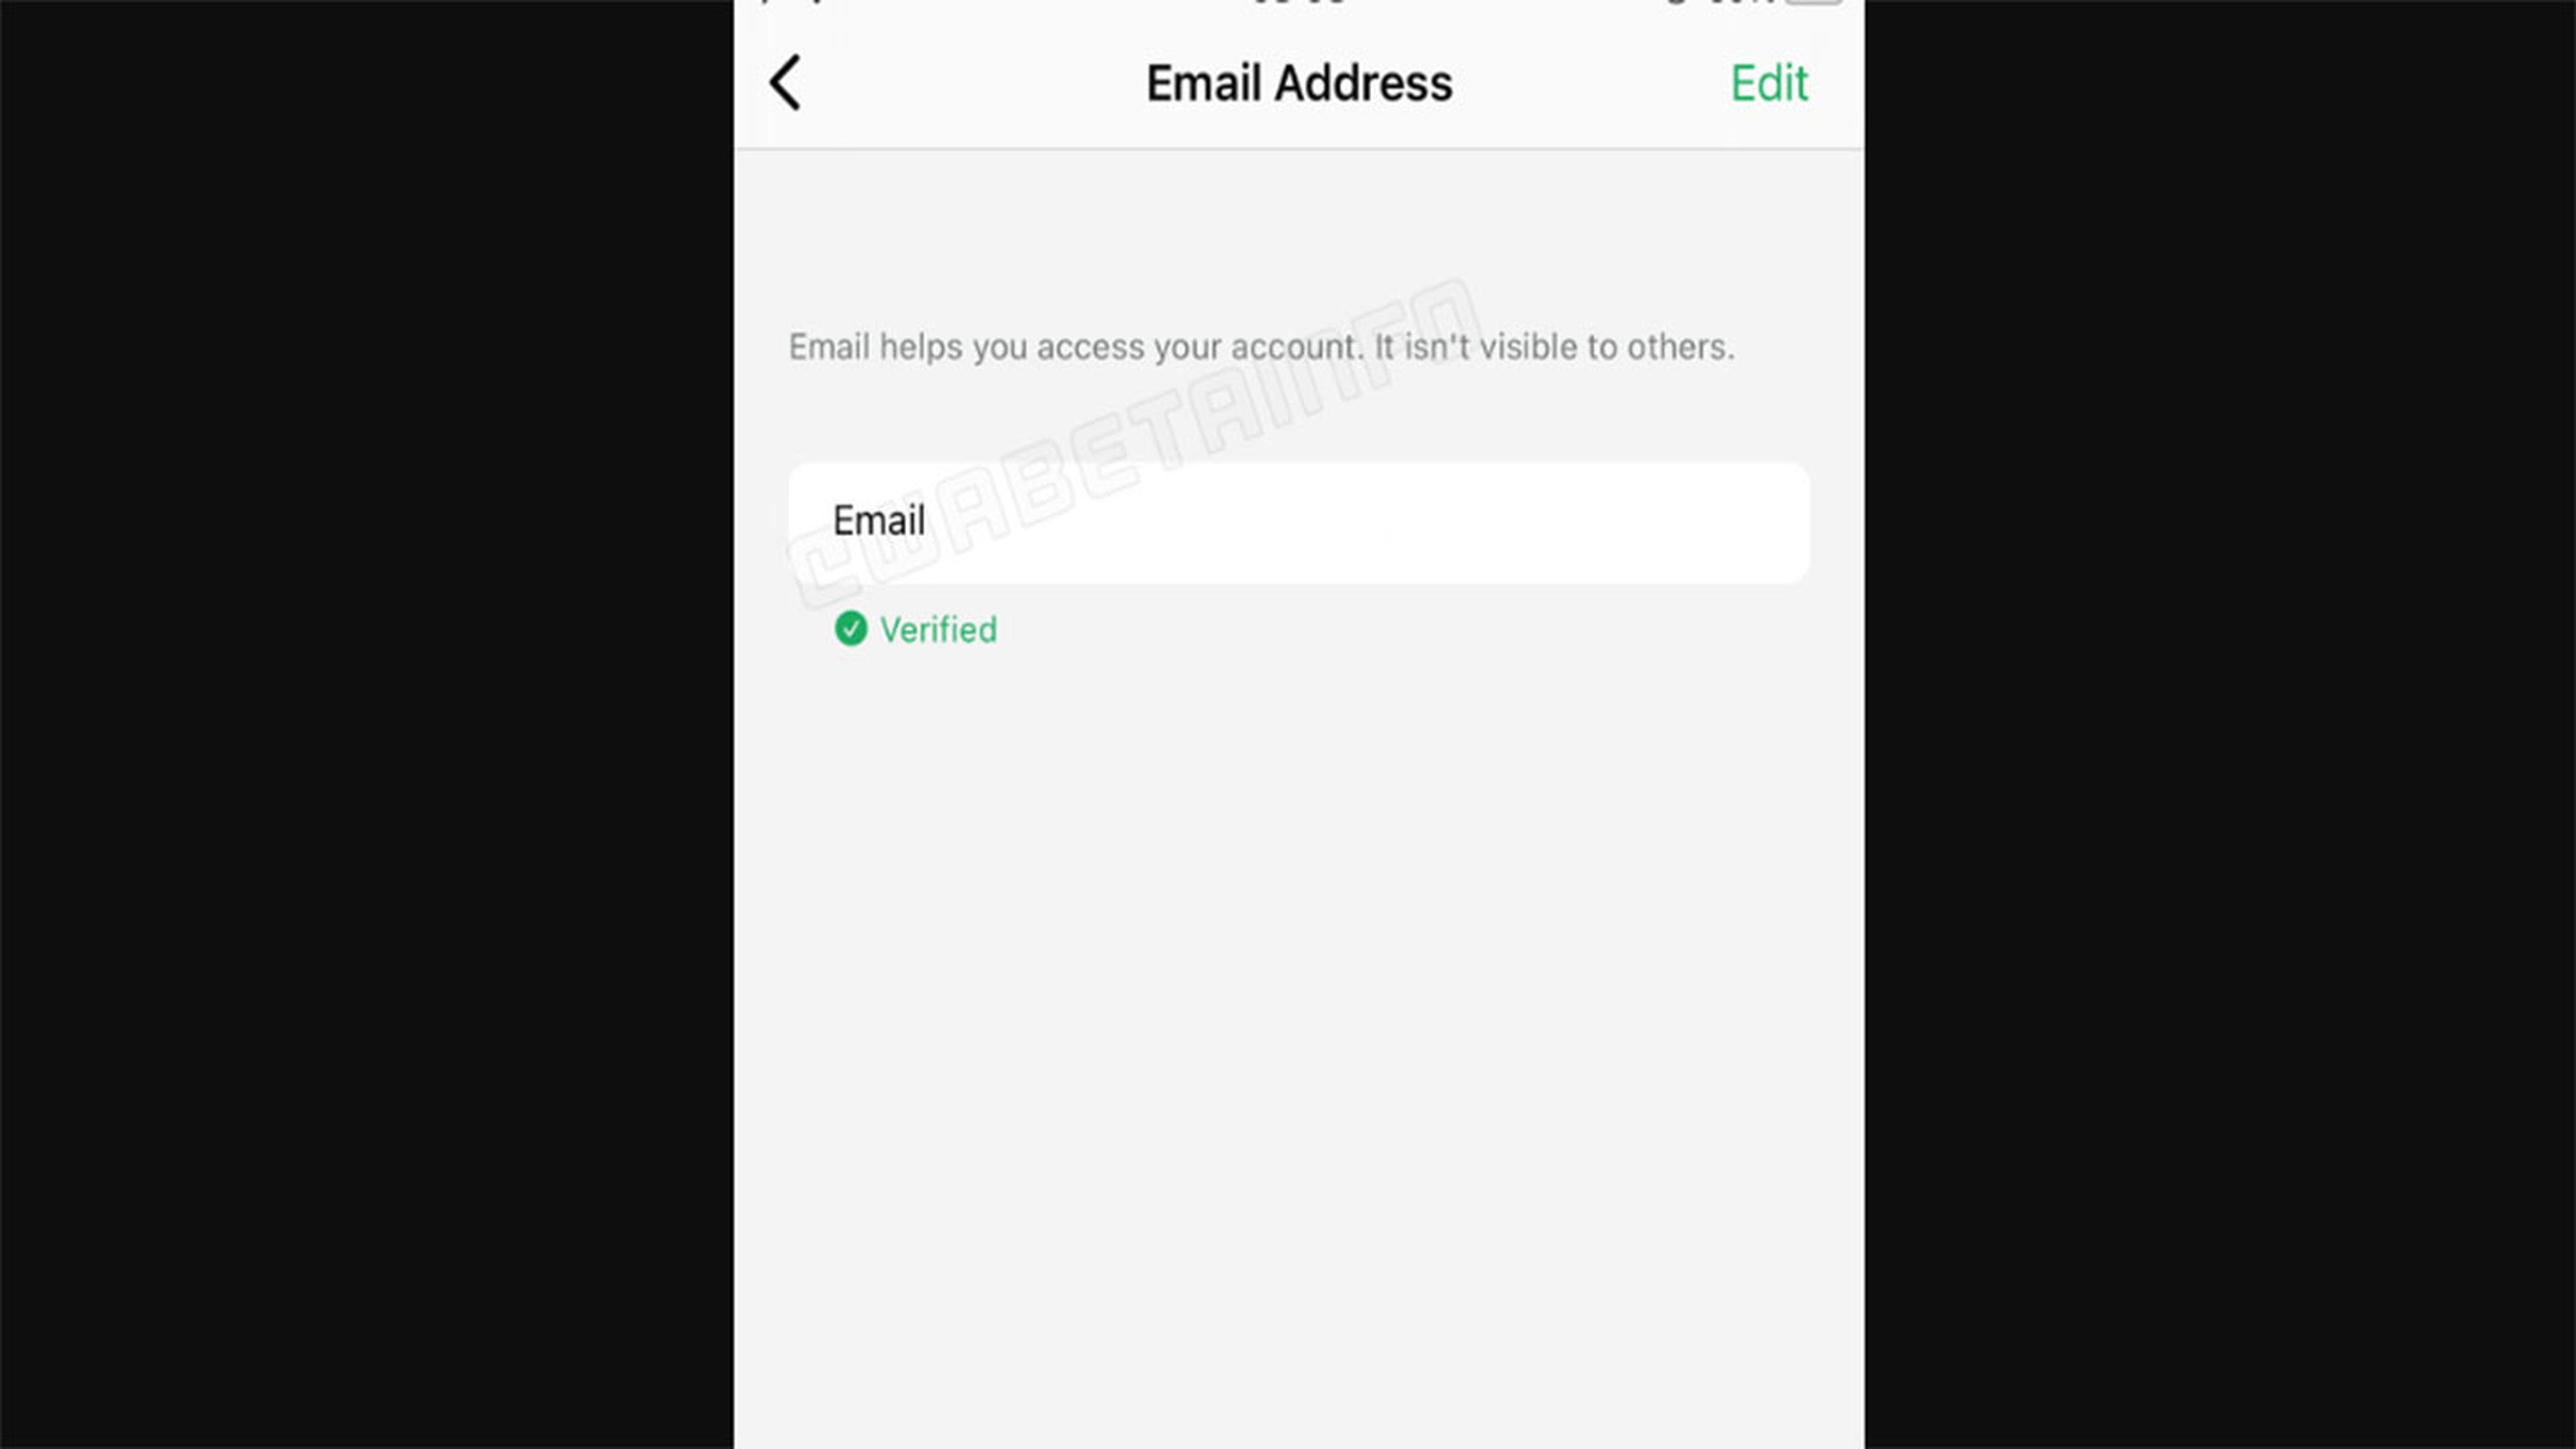 WhatsApp te permitirá iniciar sesión con tu correo electrónico